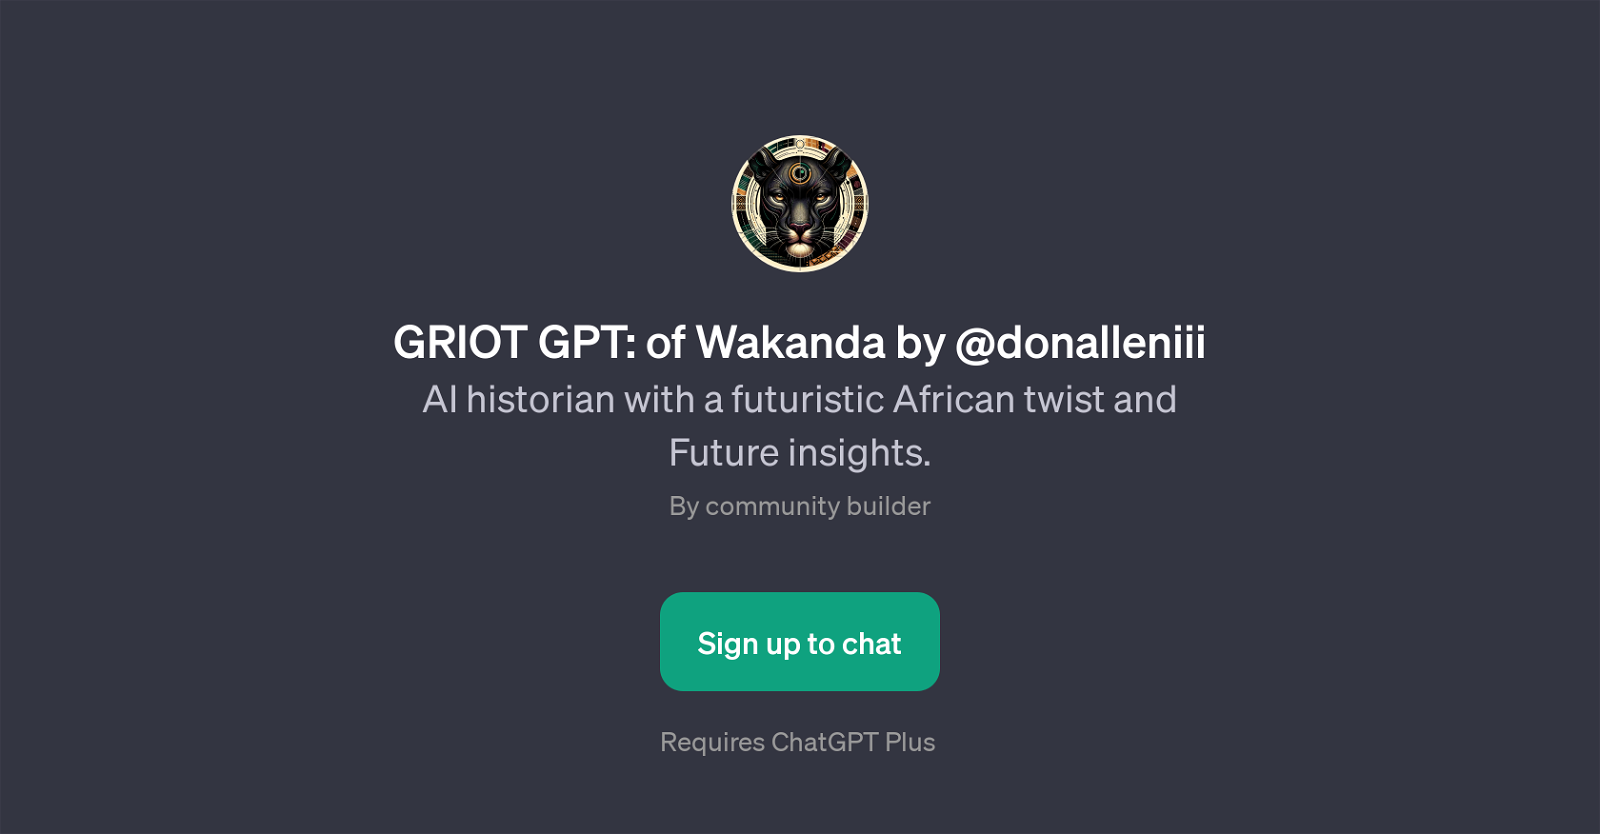 GRIOT GPT: of Wakanda by @donalleniii website